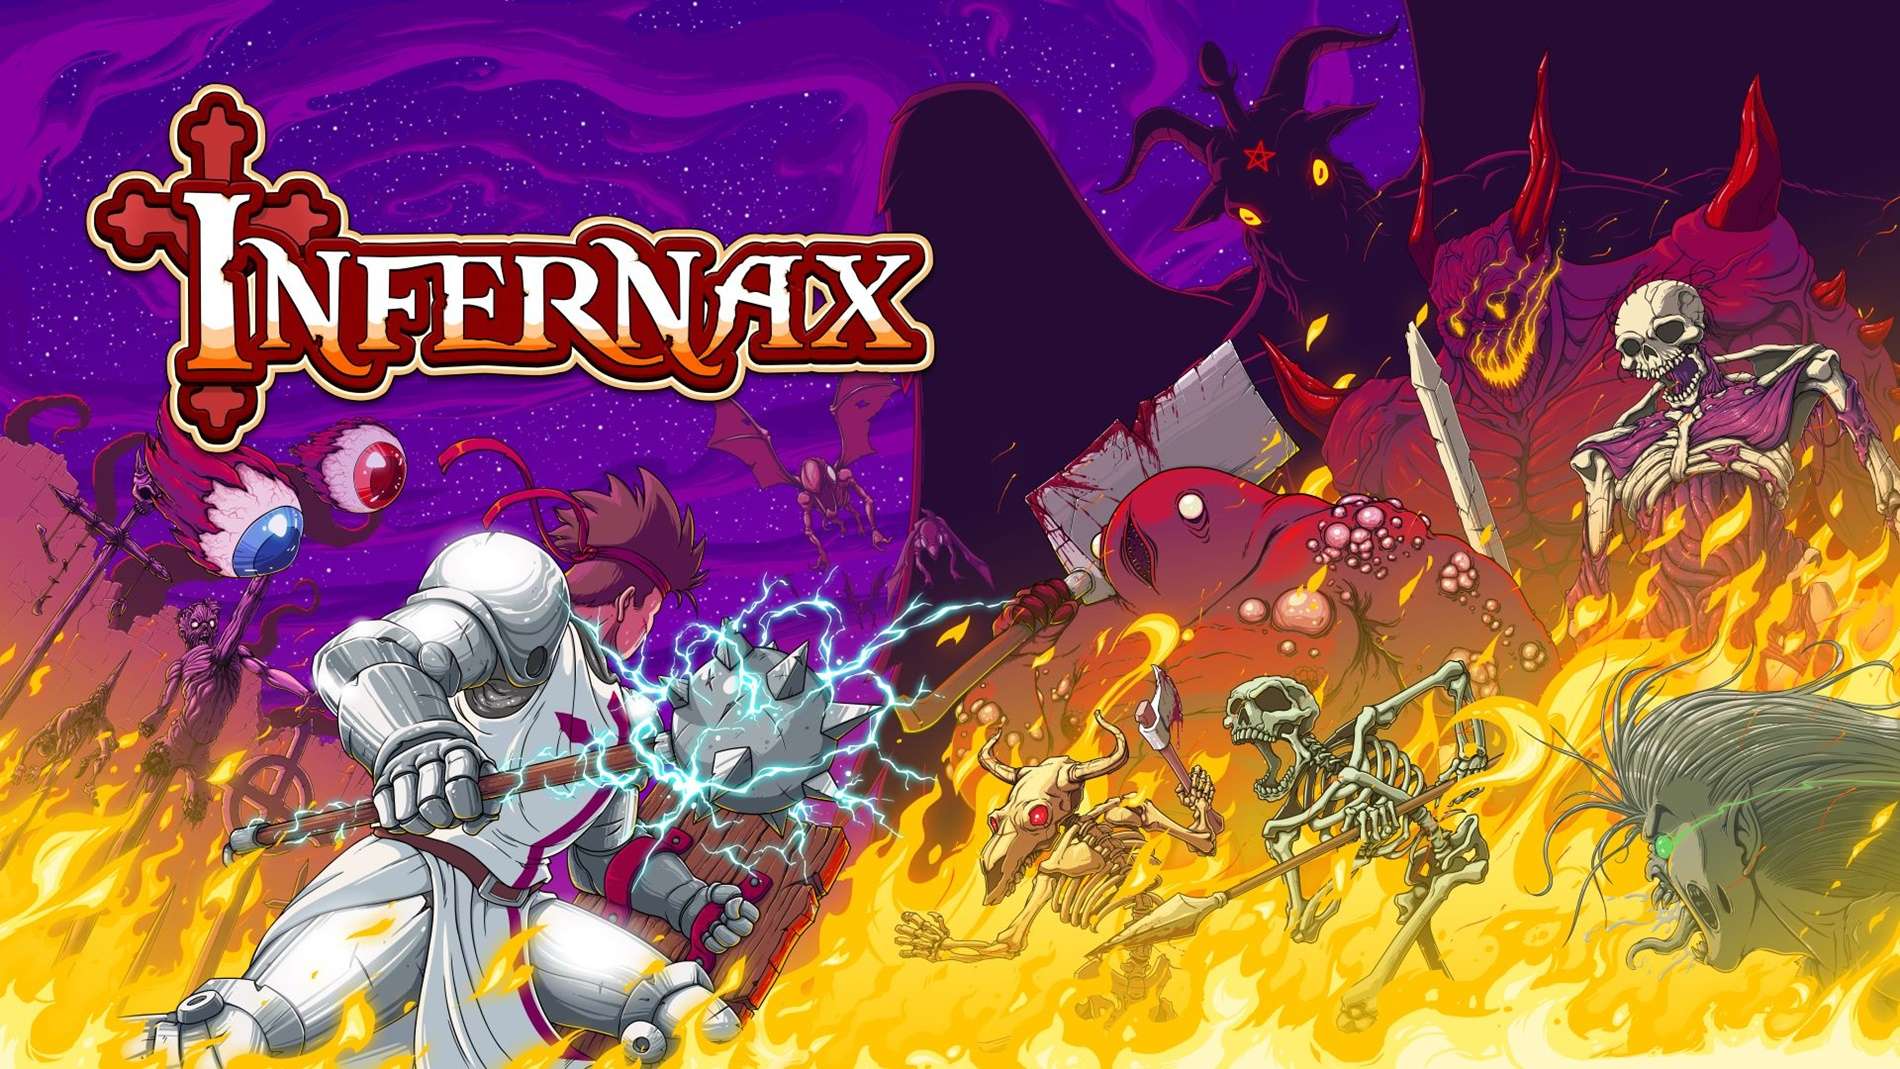 Infernax comparte su fecha de lanzamiento en PS4